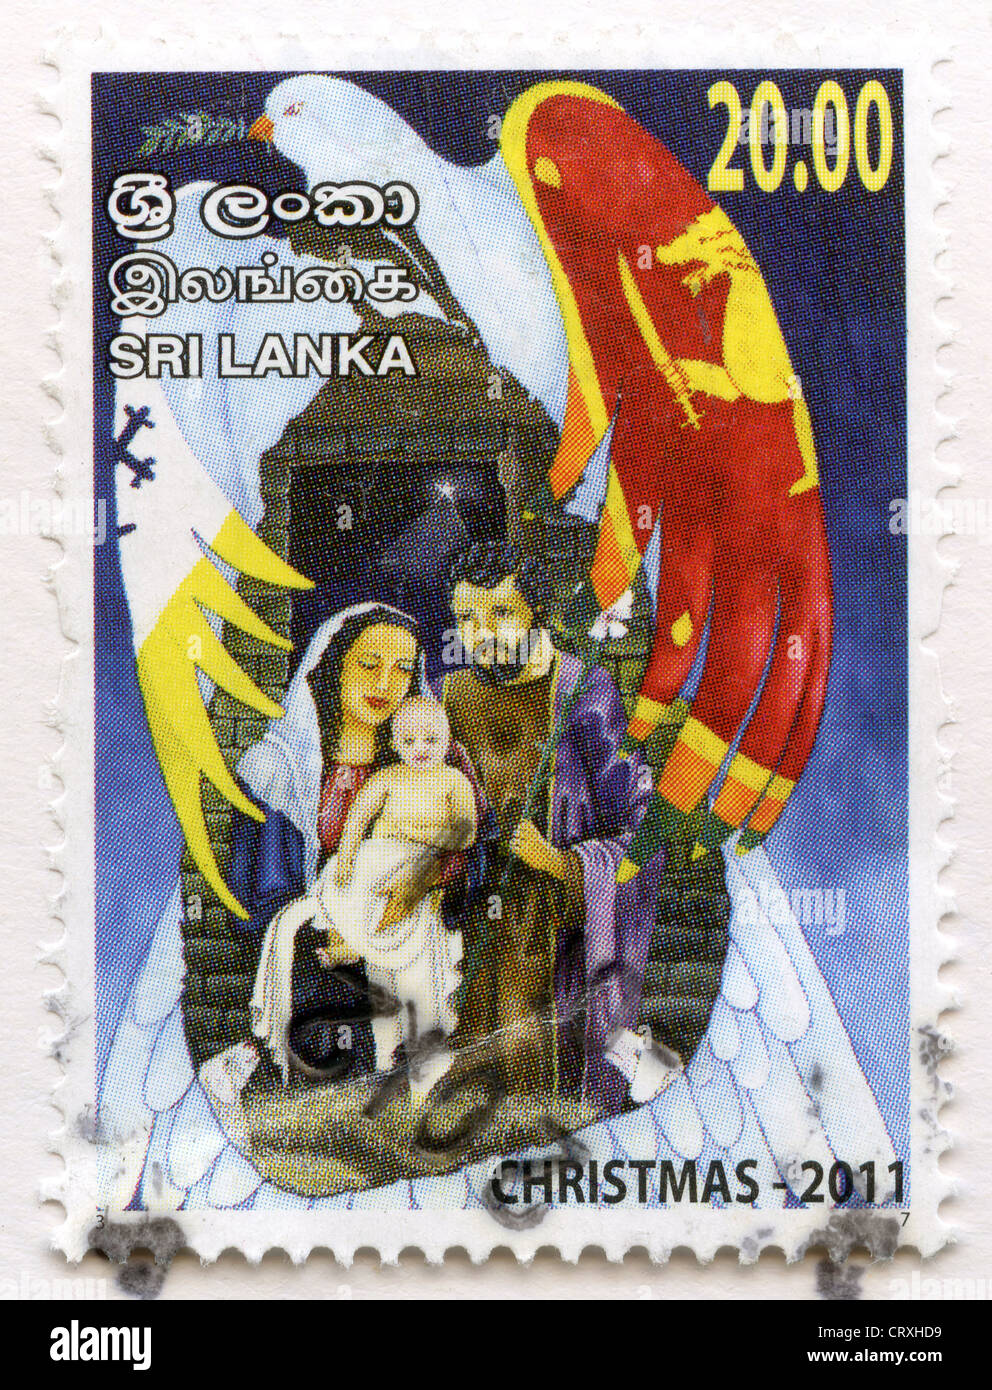 Sri Lanka postage stamp Stock Photo